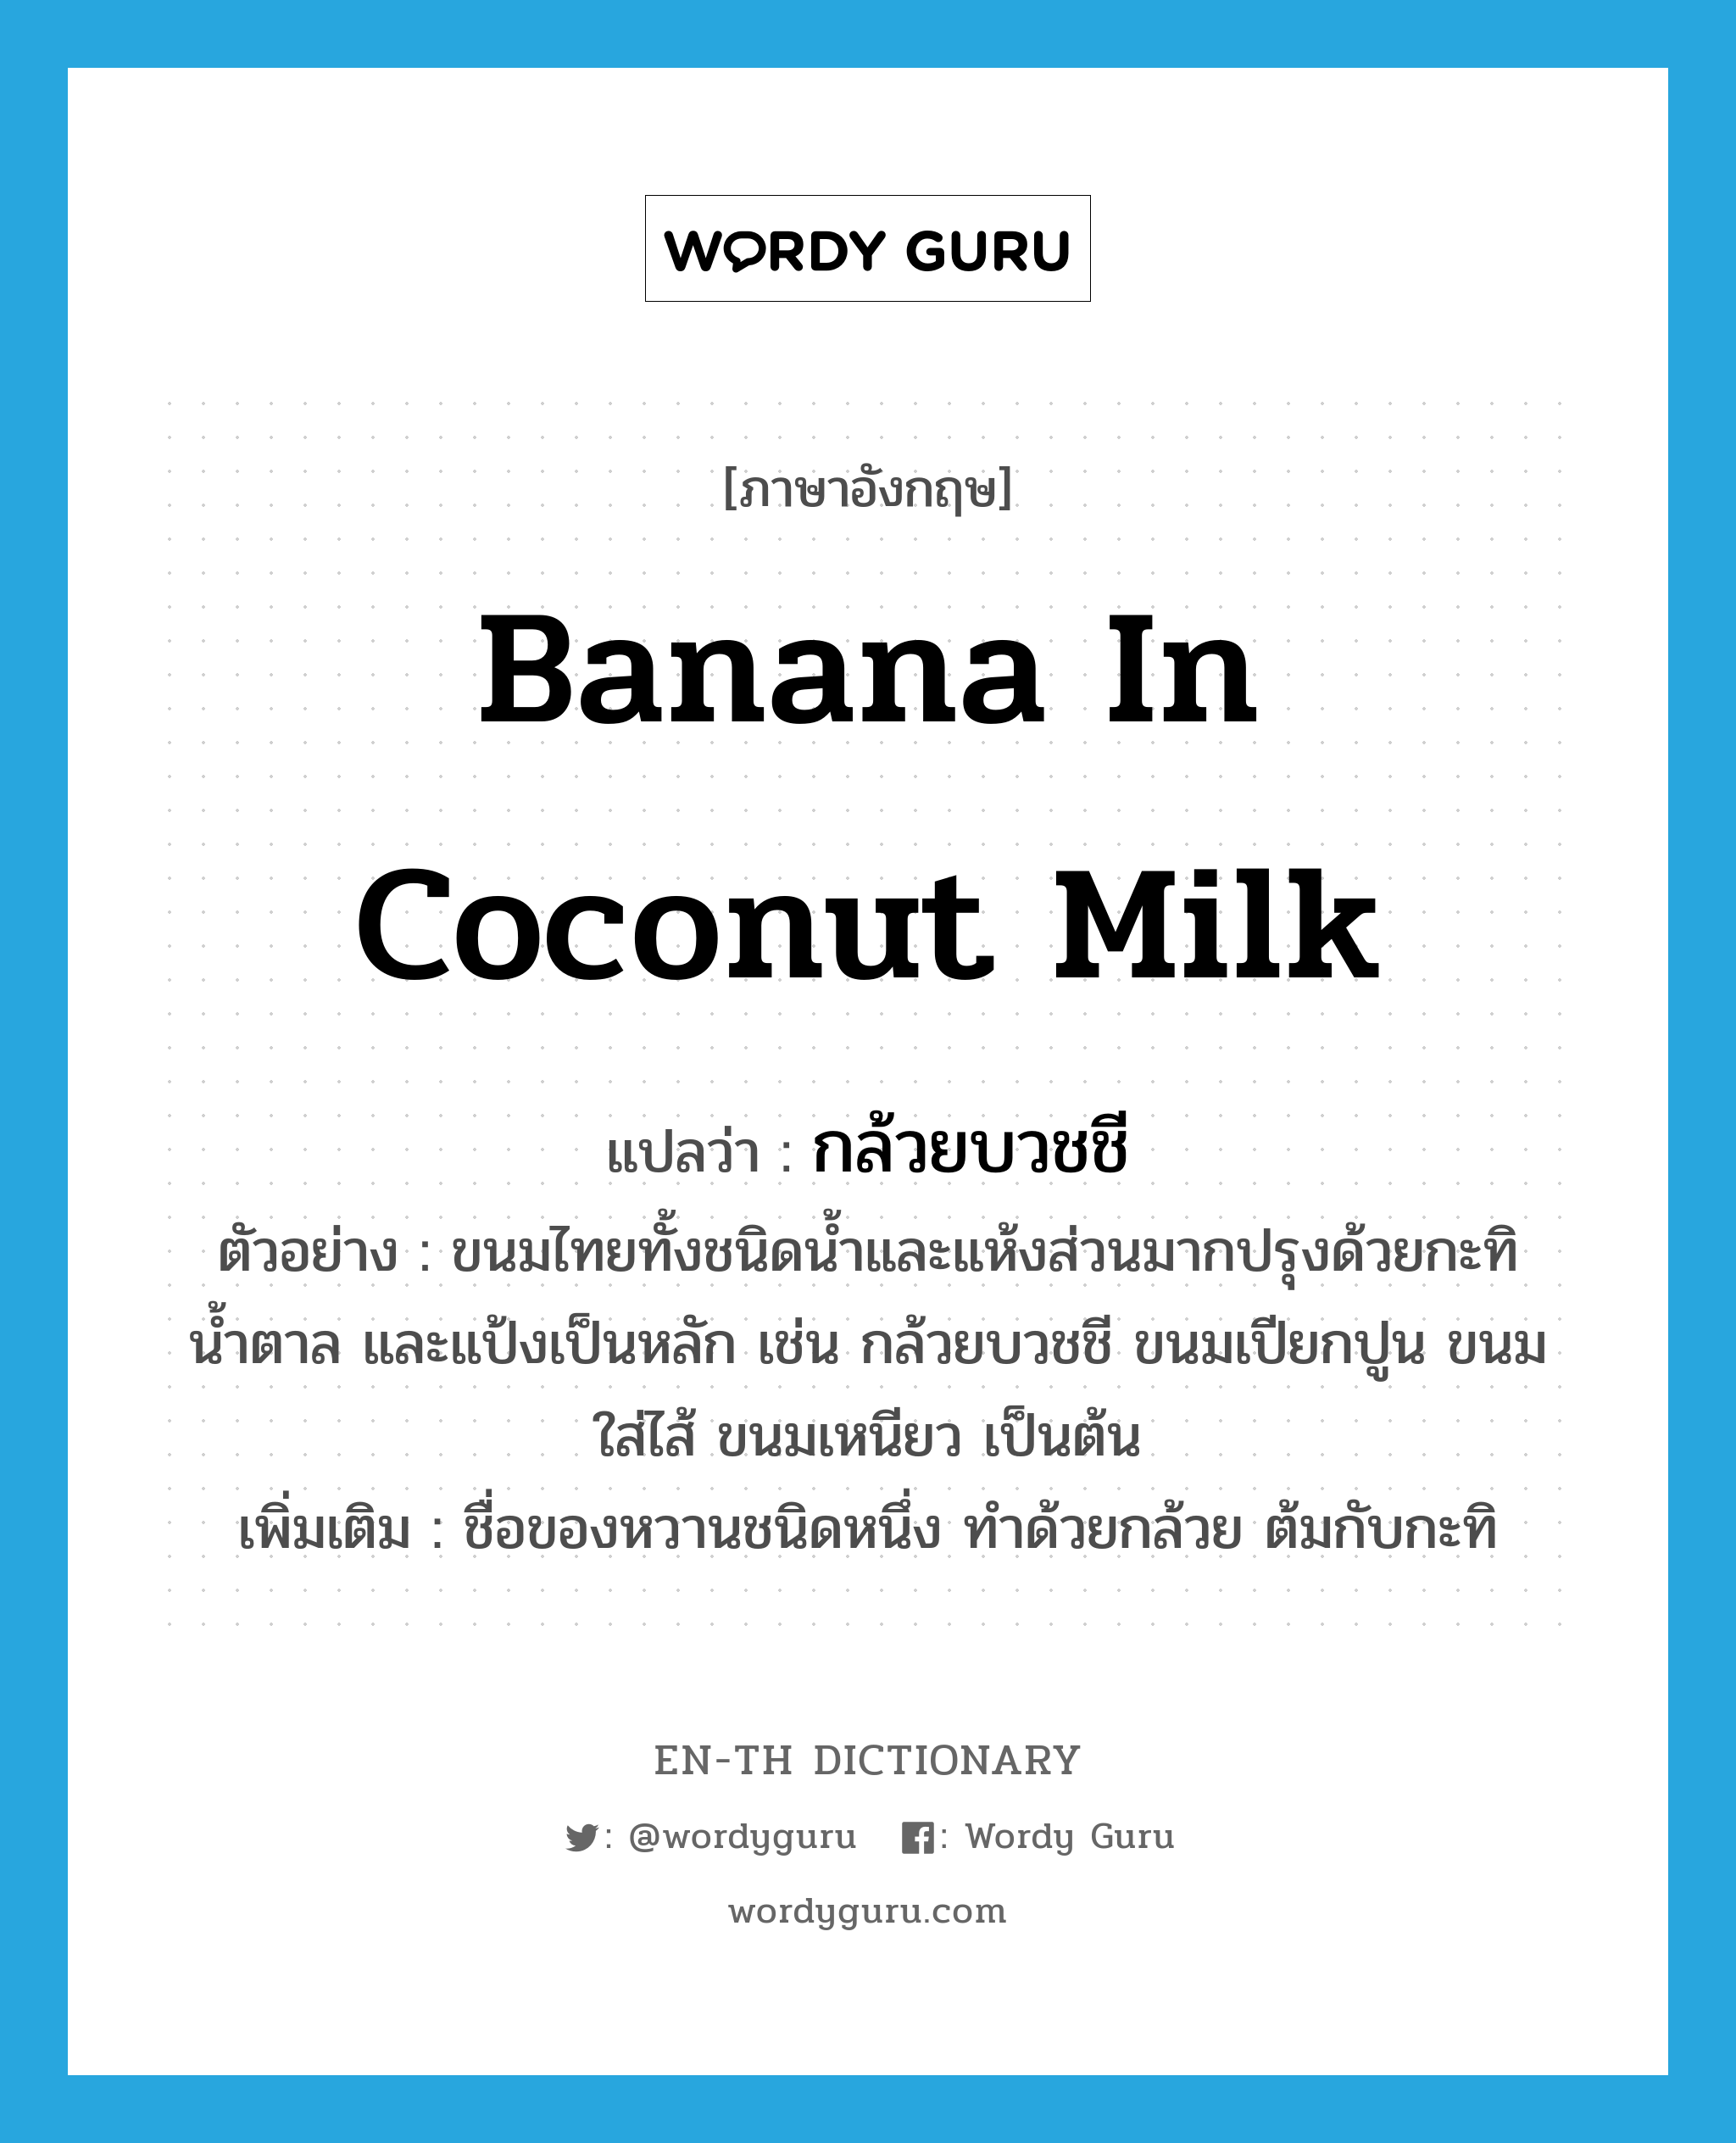 กล้วยบวชชี ภาษาอังกฤษ?, คำศัพท์ภาษาอังกฤษ กล้วยบวชชี แปลว่า banana in coconut milk ประเภท N ตัวอย่าง ขนมไทยทั้งชนิดน้ำและแห้งส่วนมากปรุงด้วยกะทิ น้ำตาล และแป้งเป็นหลัก เช่น กล้วยบวชชี ขนมเปียกปูน ขนมใส่ไส้ ขนมเหนียว เป็นต้น เพิ่มเติม ชื่อของหวานชนิดหนึ่ง ทำด้วยกล้วย ต้มกับกะทิ หมวด N